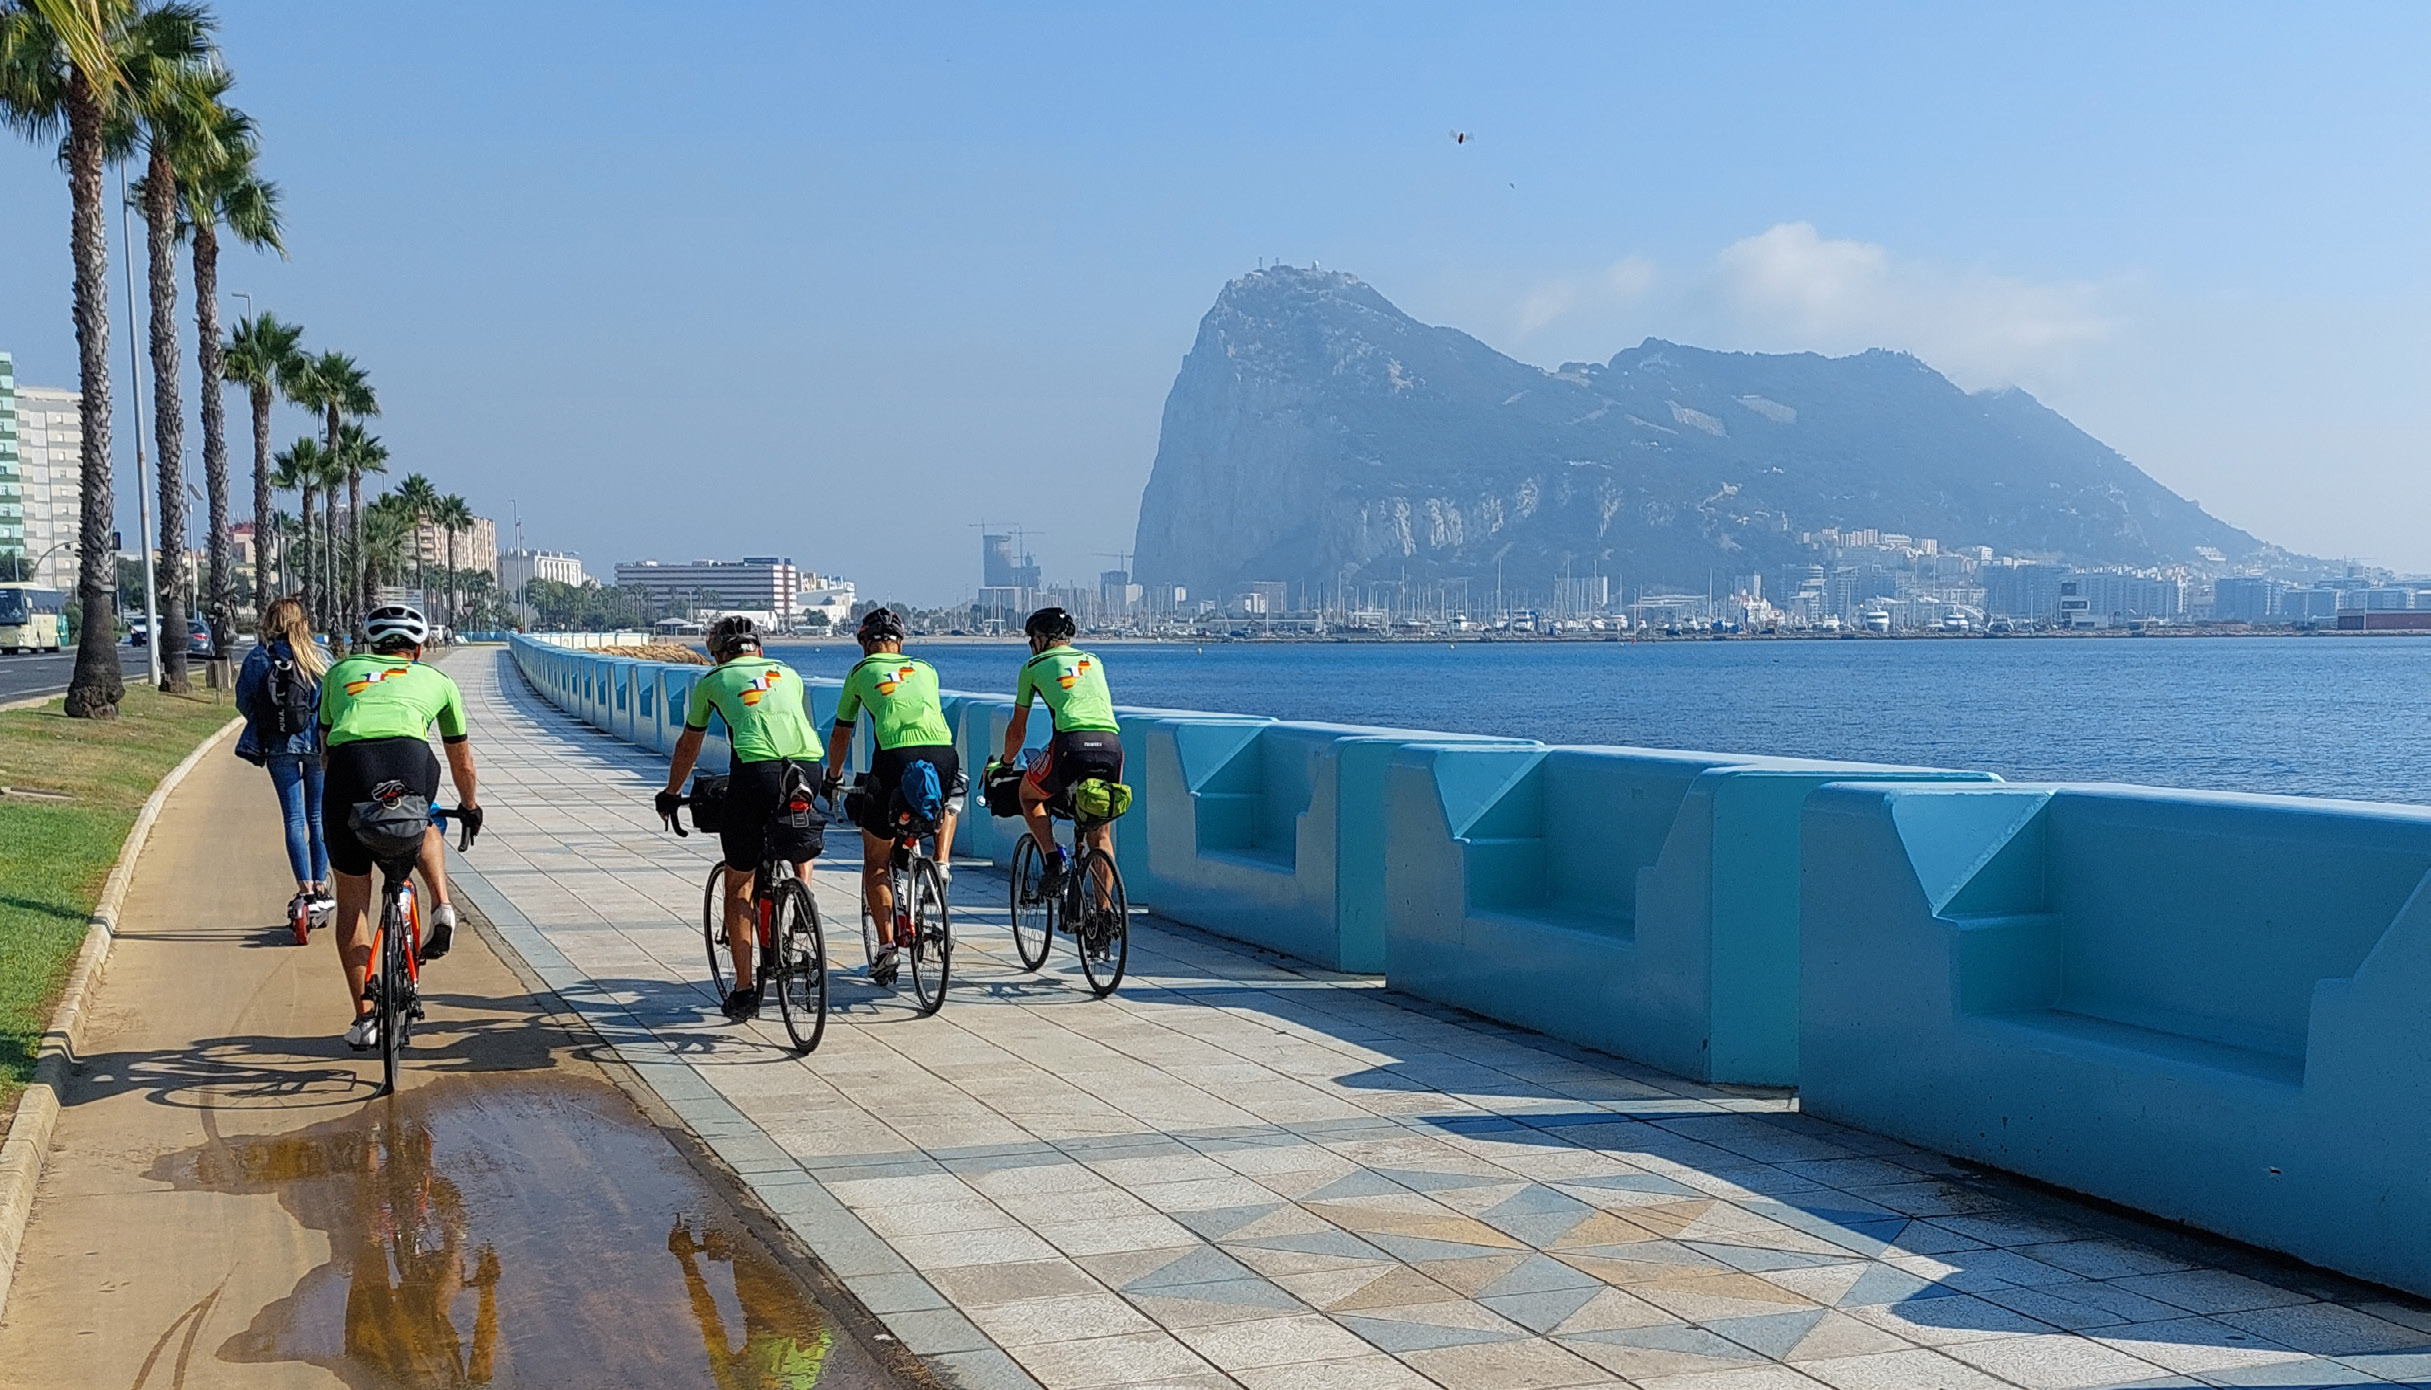 fyra cyklande killar i gröna tröjor plåtade bakifrån på en strandpromenad. Gibraltar-klippan tornar upp sig i bakgrunden.